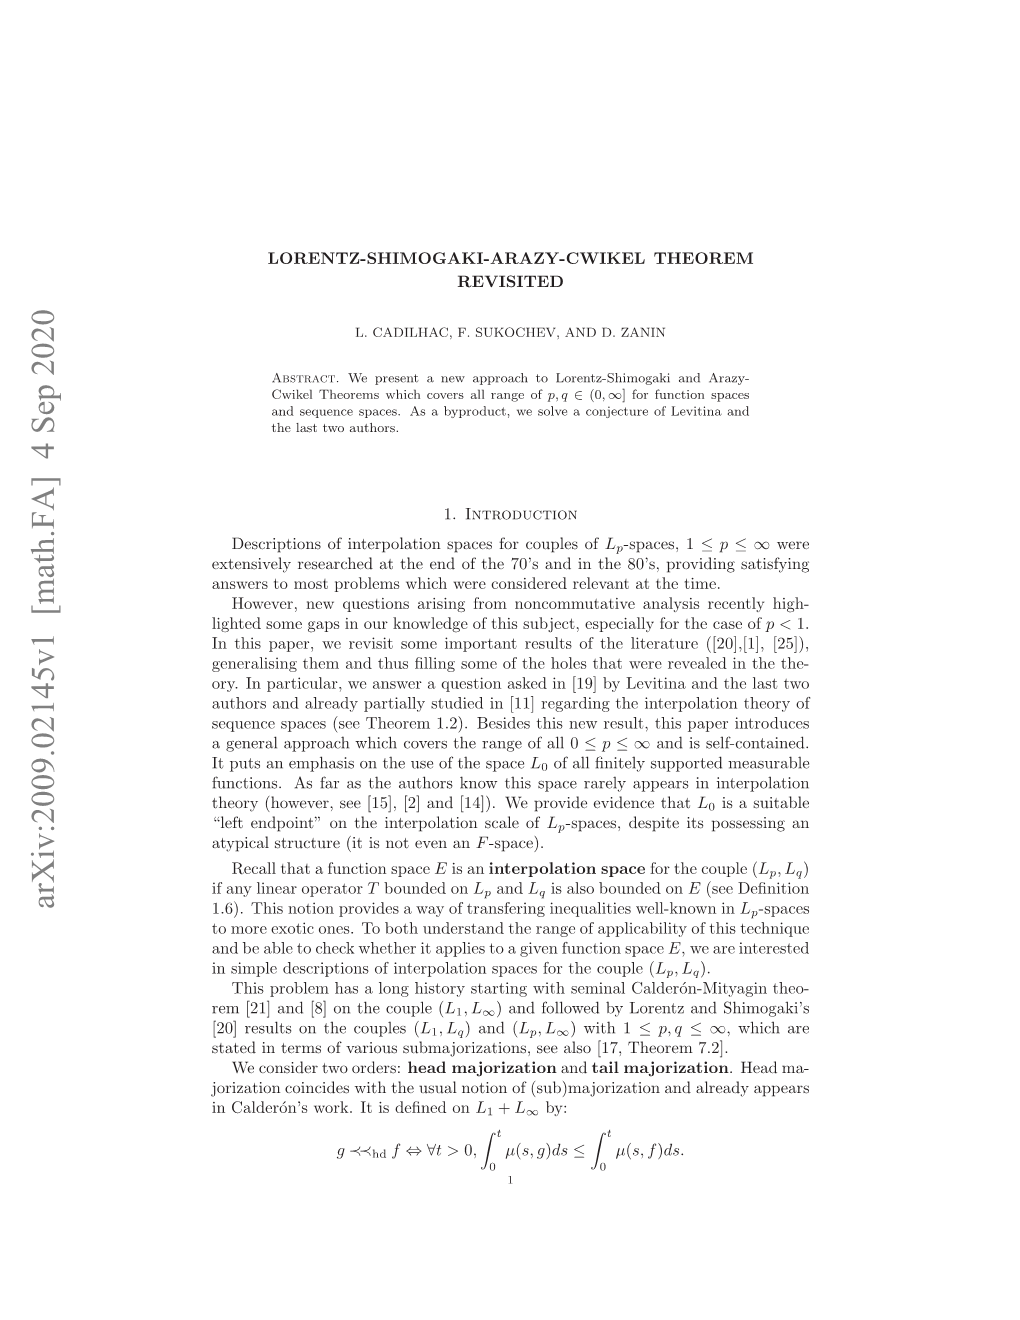 Lorentz-Shimogaki-Arazy-Cwikel Theorem Revisited